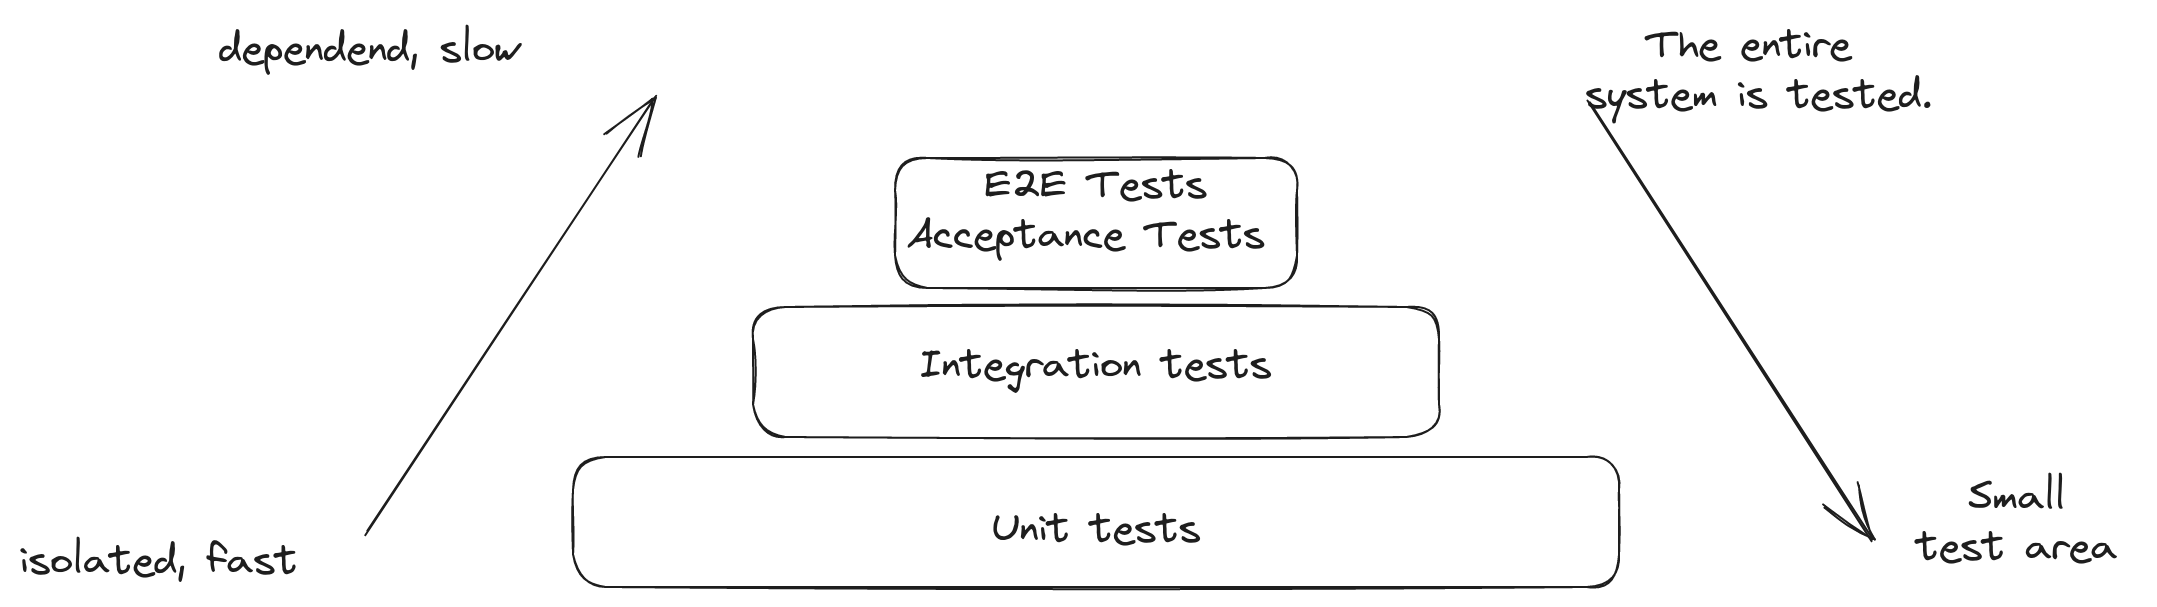 استراتيجيات الاختبار: الاختبار التنازلي والاختبار التصاعدي